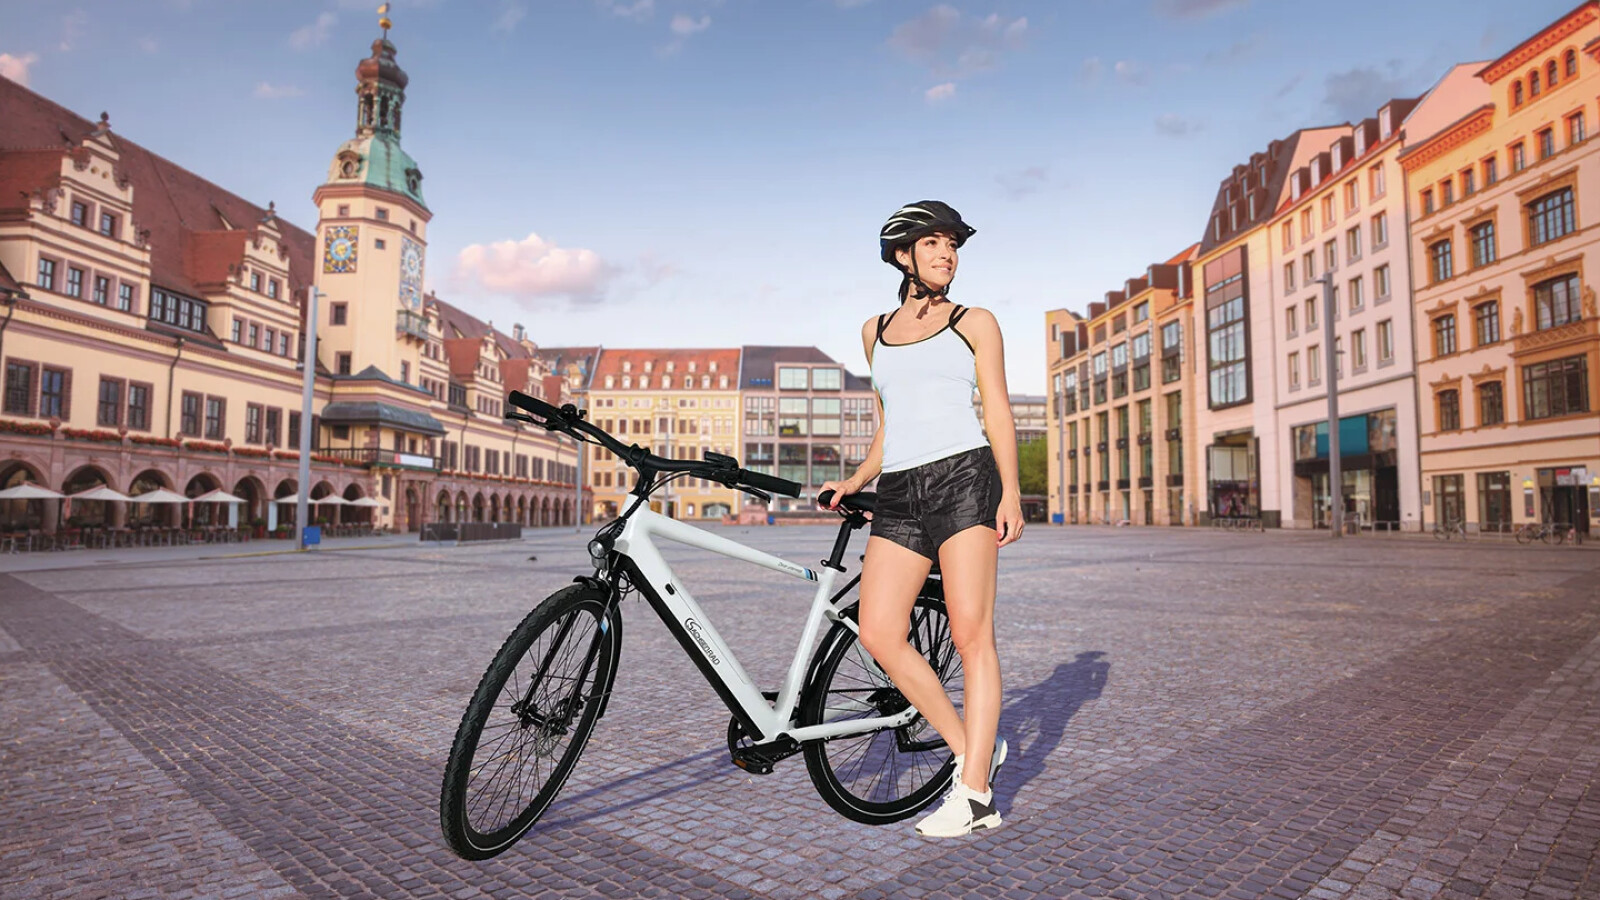 Dalla nuova brochure: Questa settimana un'elegante e-bike per viaggiare da Lidl con uno sconto di 400 €